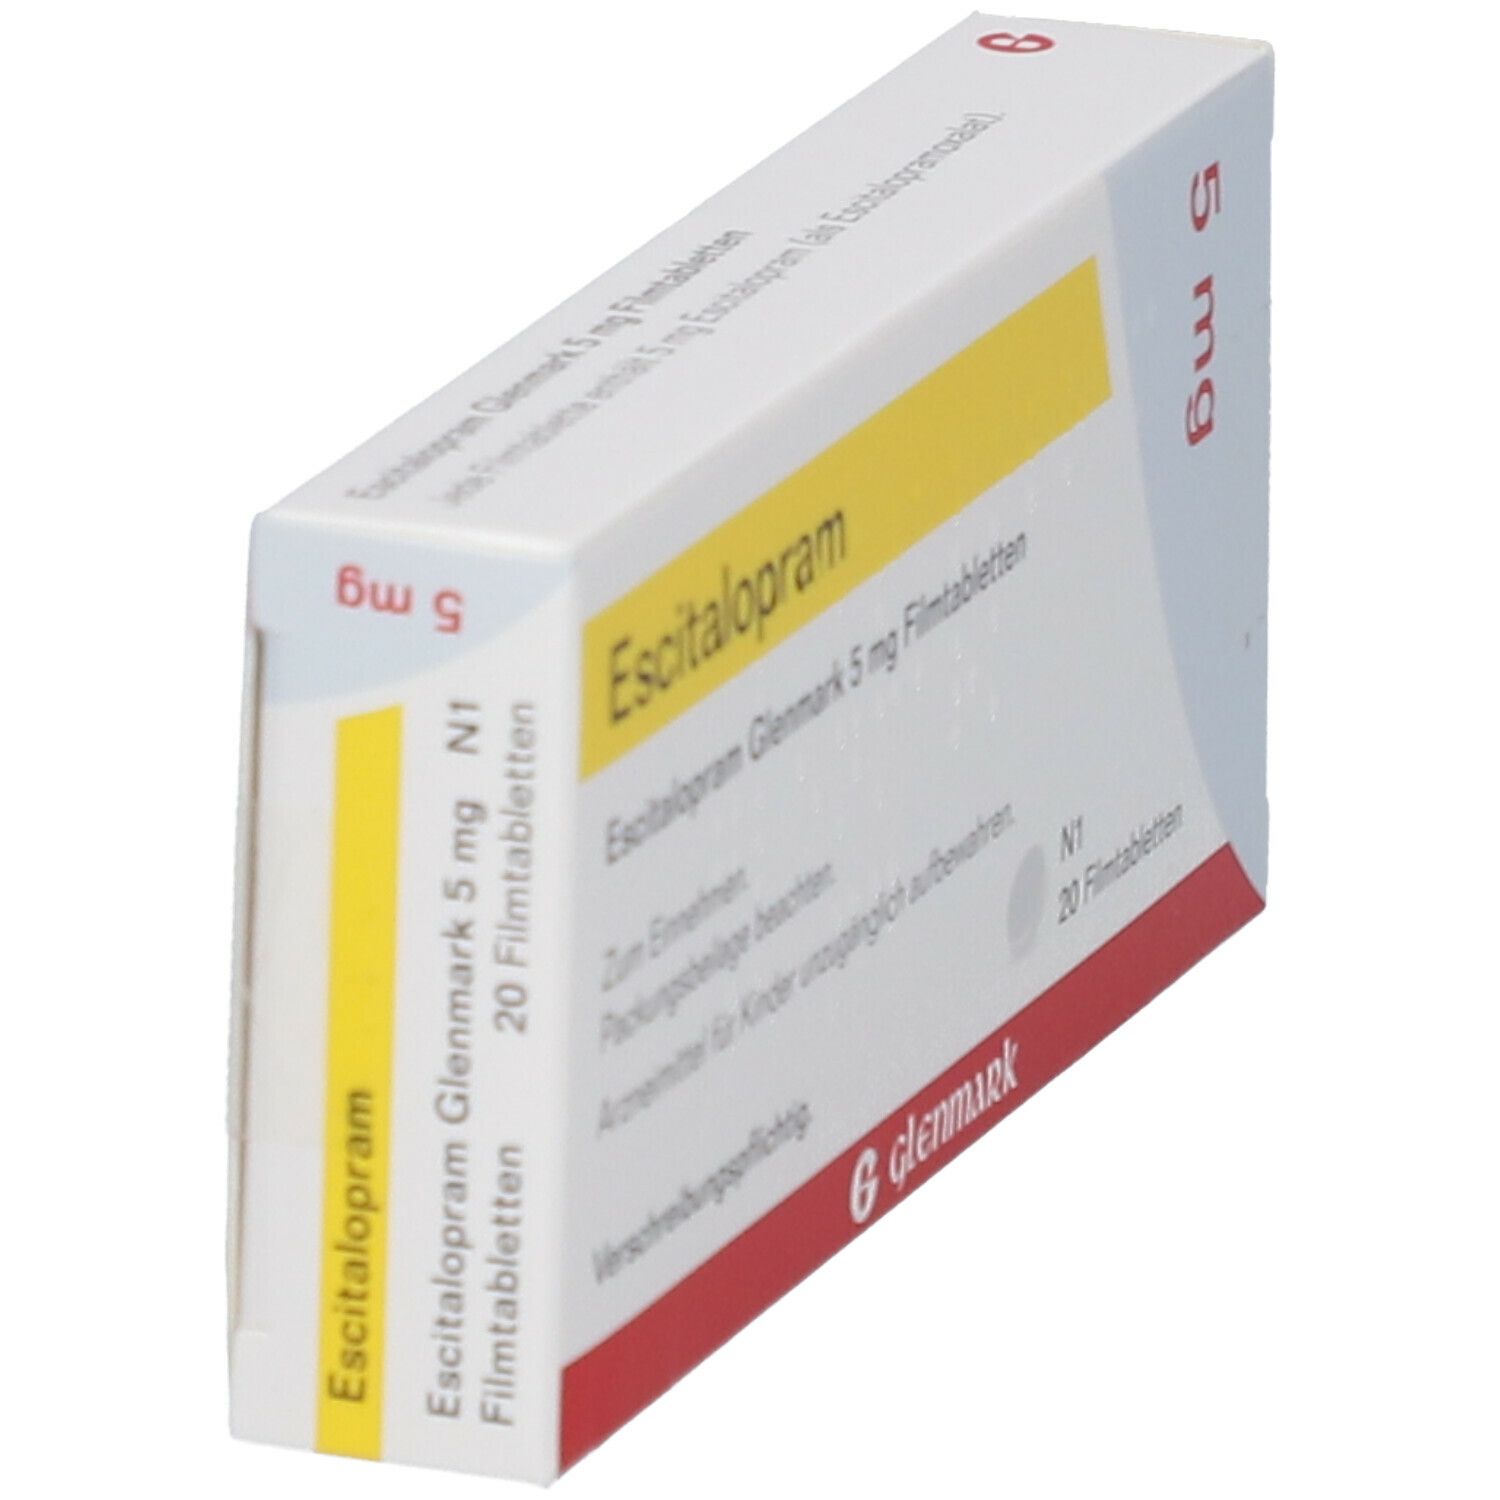 Escitalopram Glenmark 5 mg